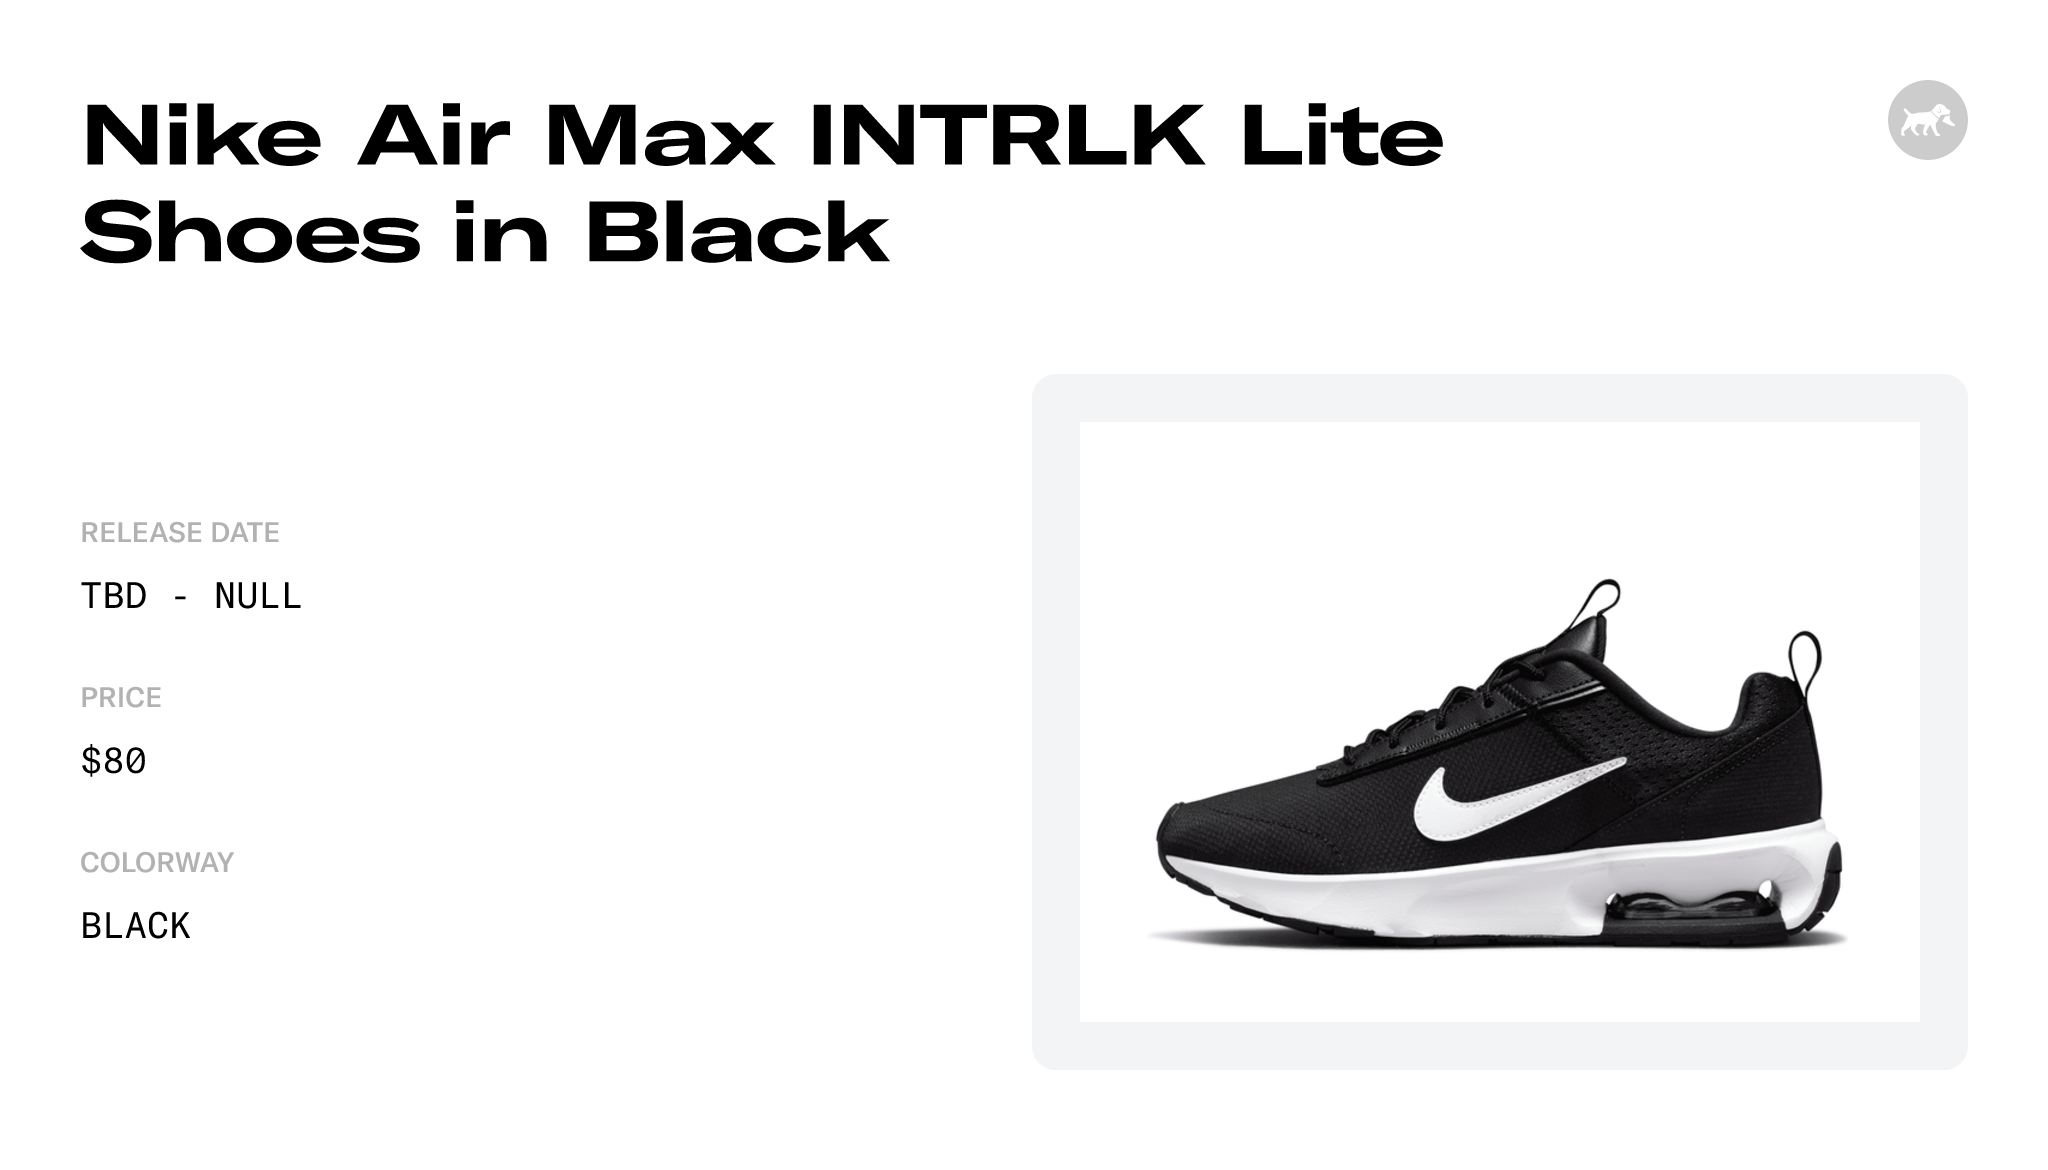 Nike Womens WMNS Air Max INTRLK Lite DH0874 003